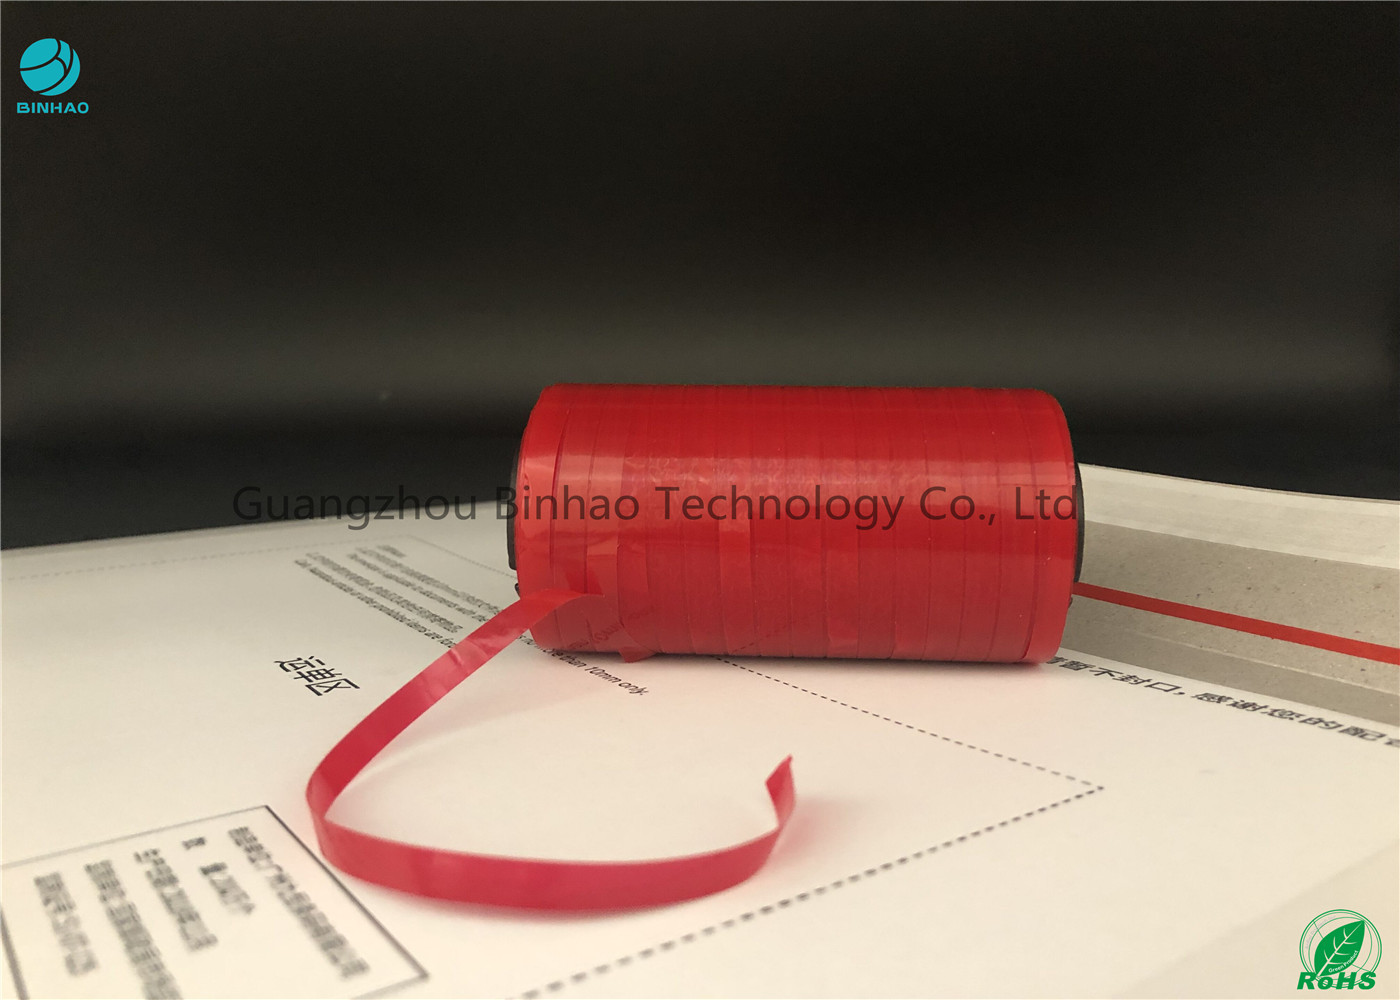 স্বয়ং - সিগারেট এবং প্রসাধনী ISO9001 সার্টিফিকেট জন্য আঠালো টিয়ার জল প্রতিরোধী টেপ